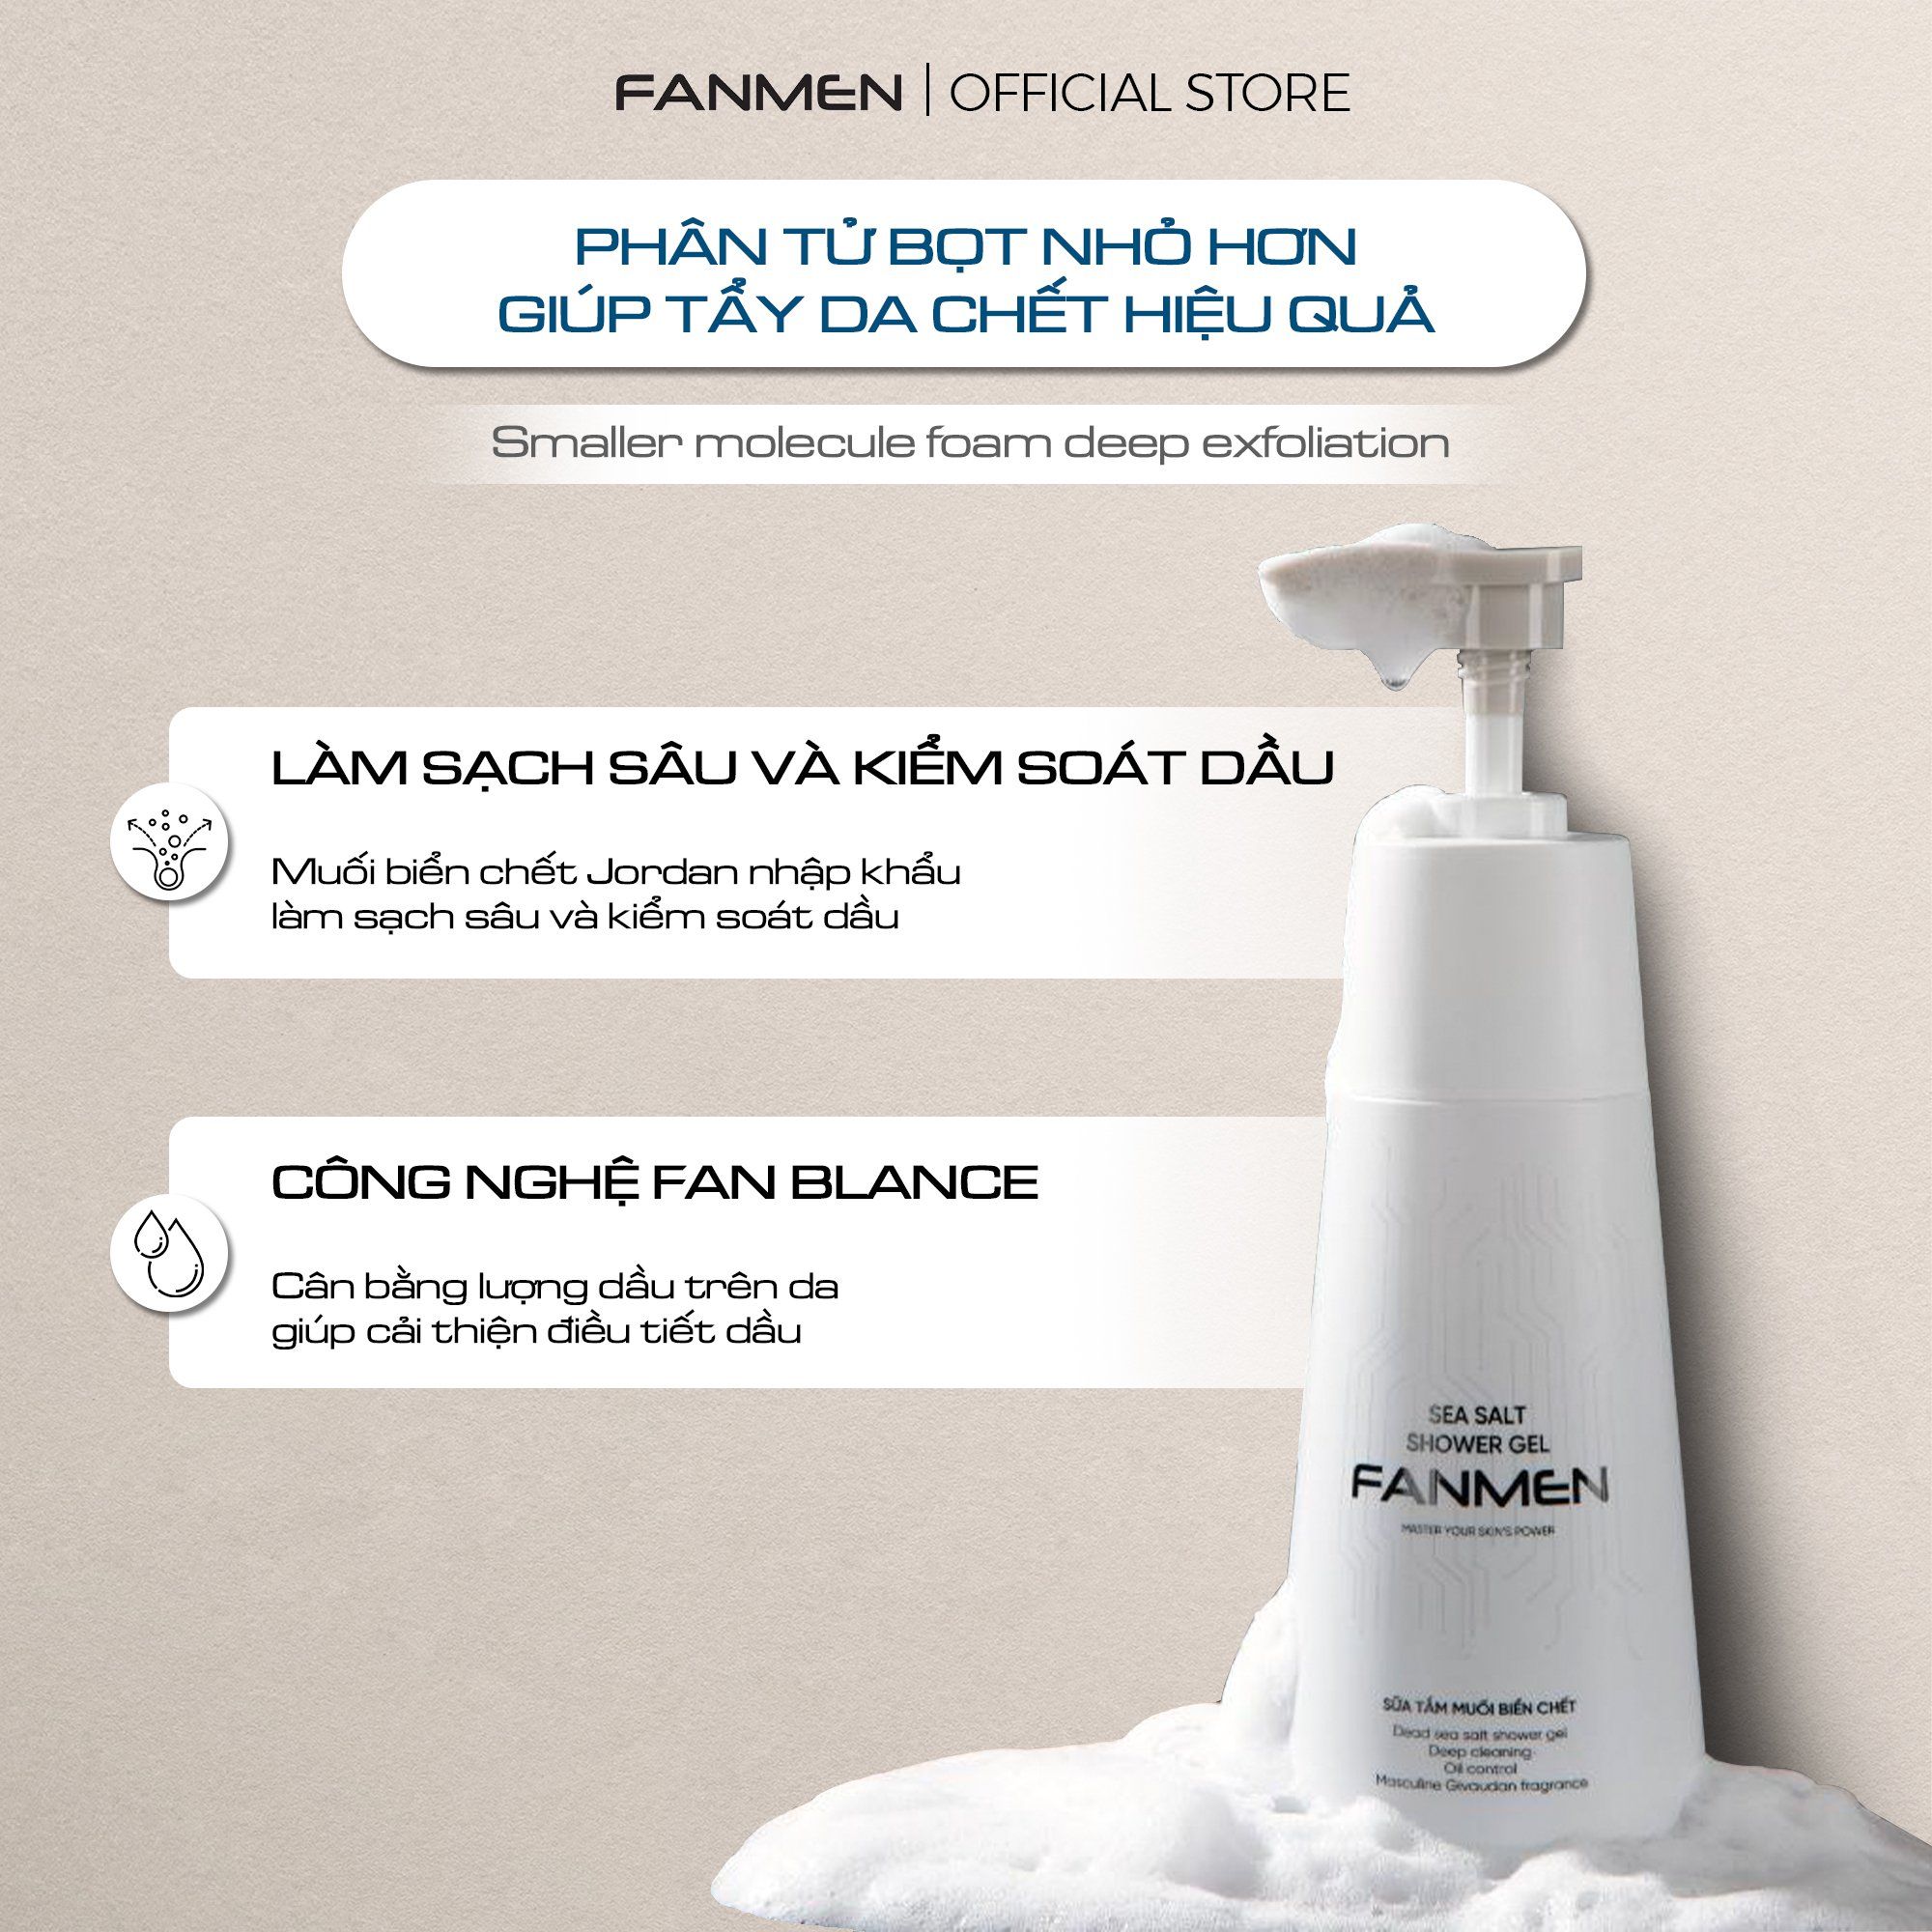  Sữa Tắm Fanmen - Làm sạch sâu, kiểm soát dầu hiệu quả 350ml 